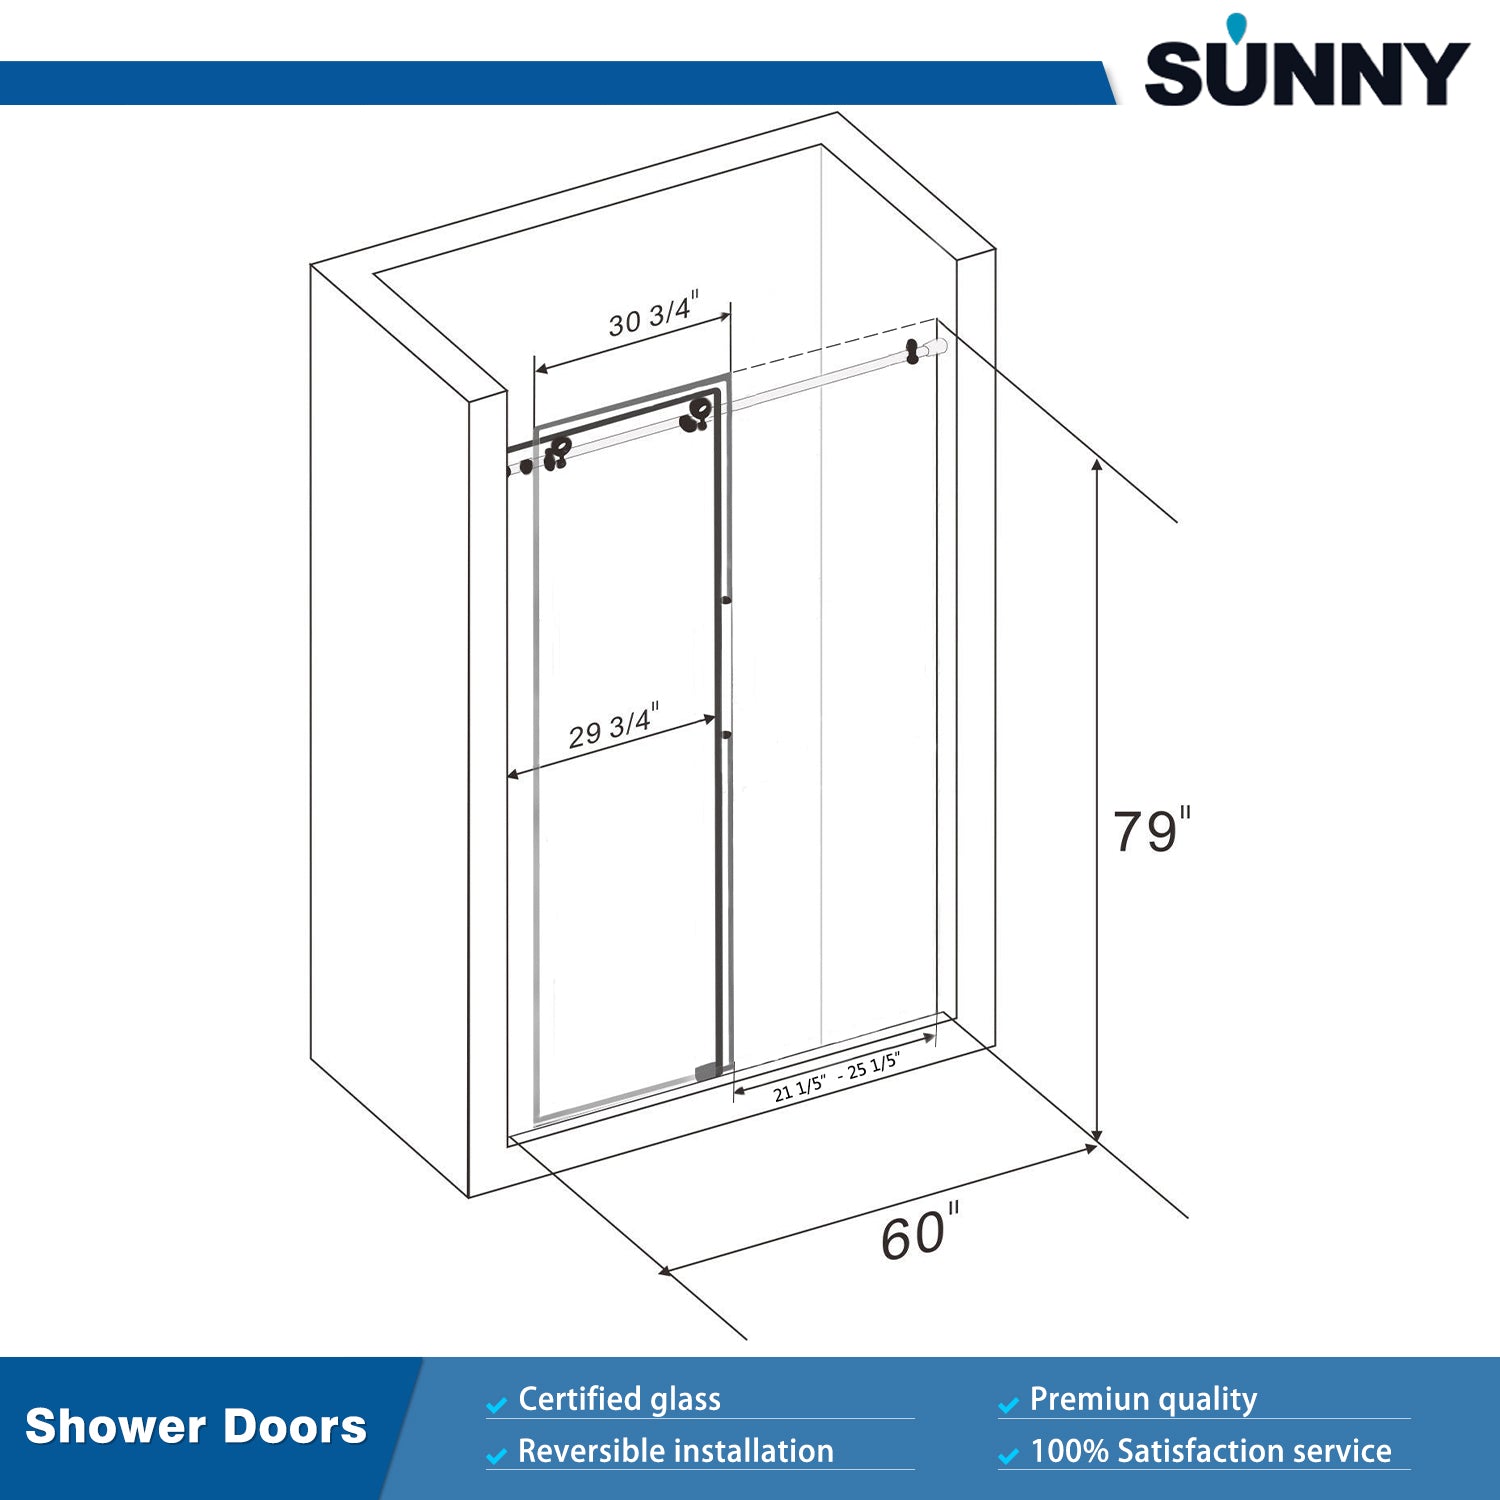 SUNNY SHOWER 60 in. W x 79 in. H Frameless Sliding Shower Doors Dimensions